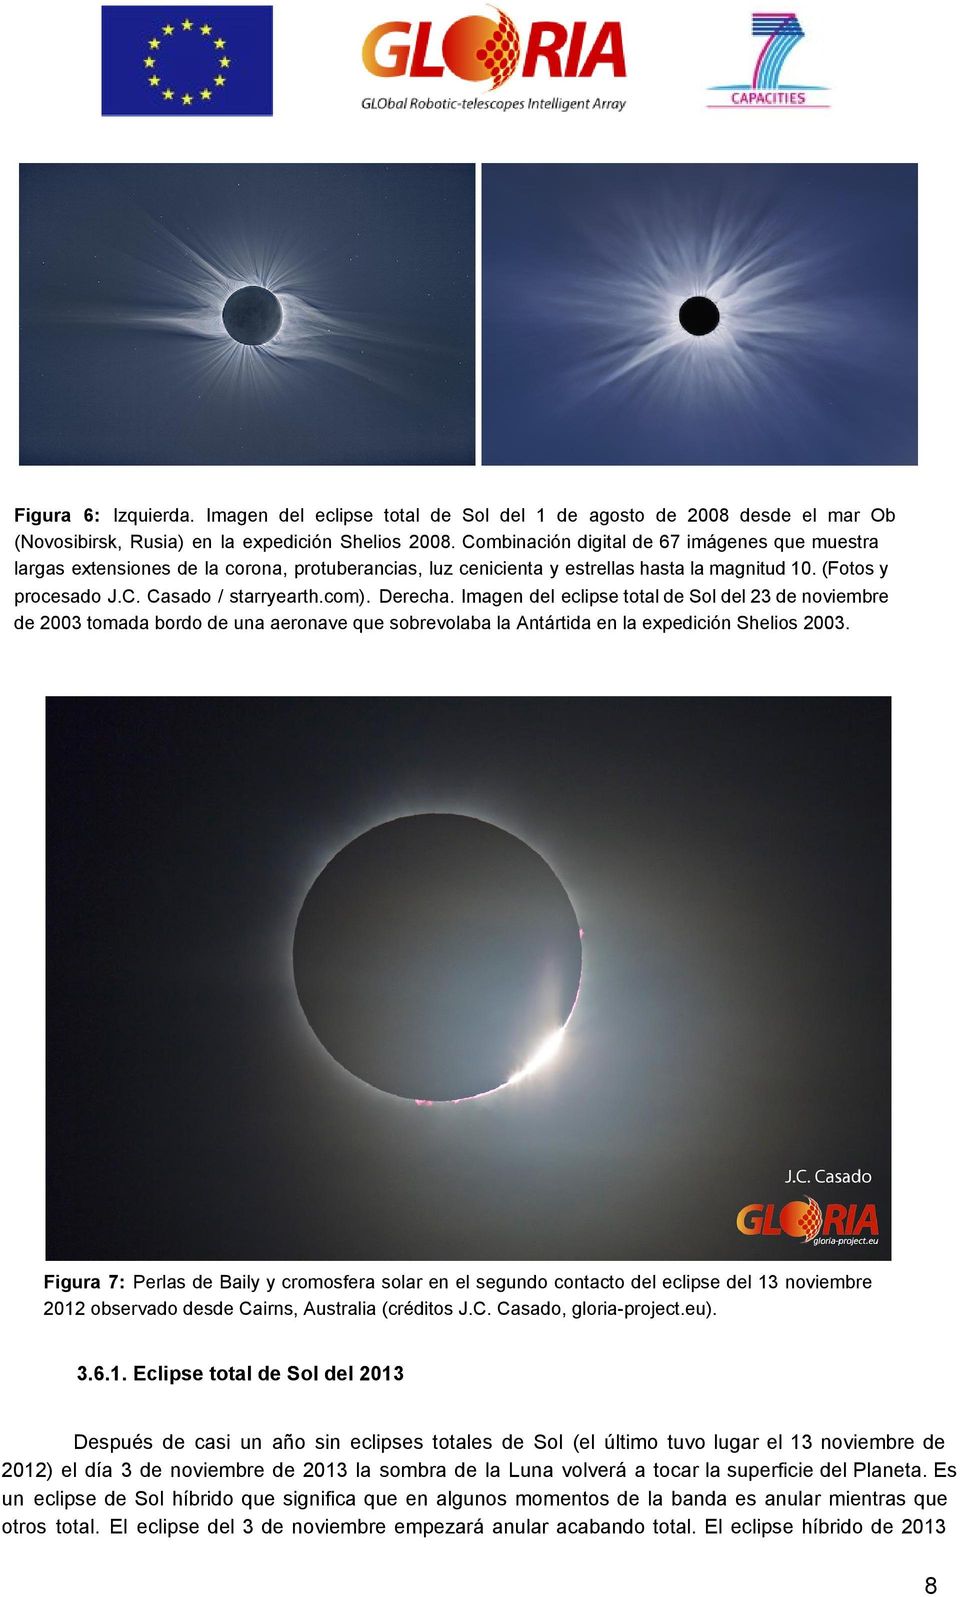 Derecha. Imagen del eclipse total de Sol del 23 de noviembre de 2003 tomada bordo de una aeronave que sobrevolaba la Antártida en la expedición Shelios 2003.